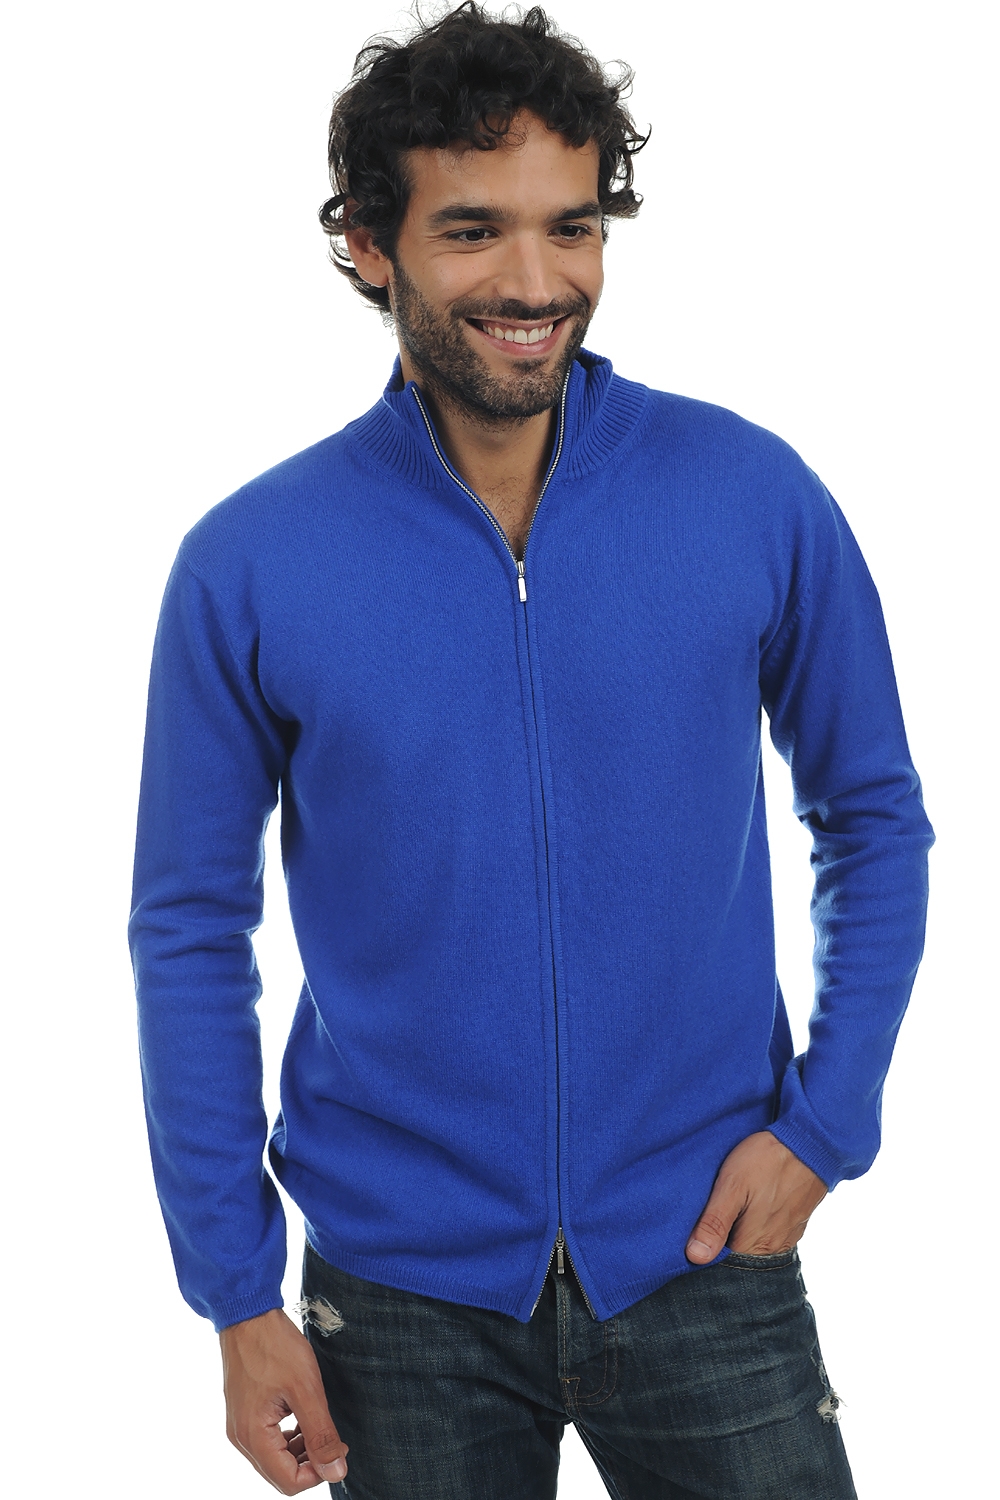 Cachemire pull homme zip capuche elton bleu lapis 2xl